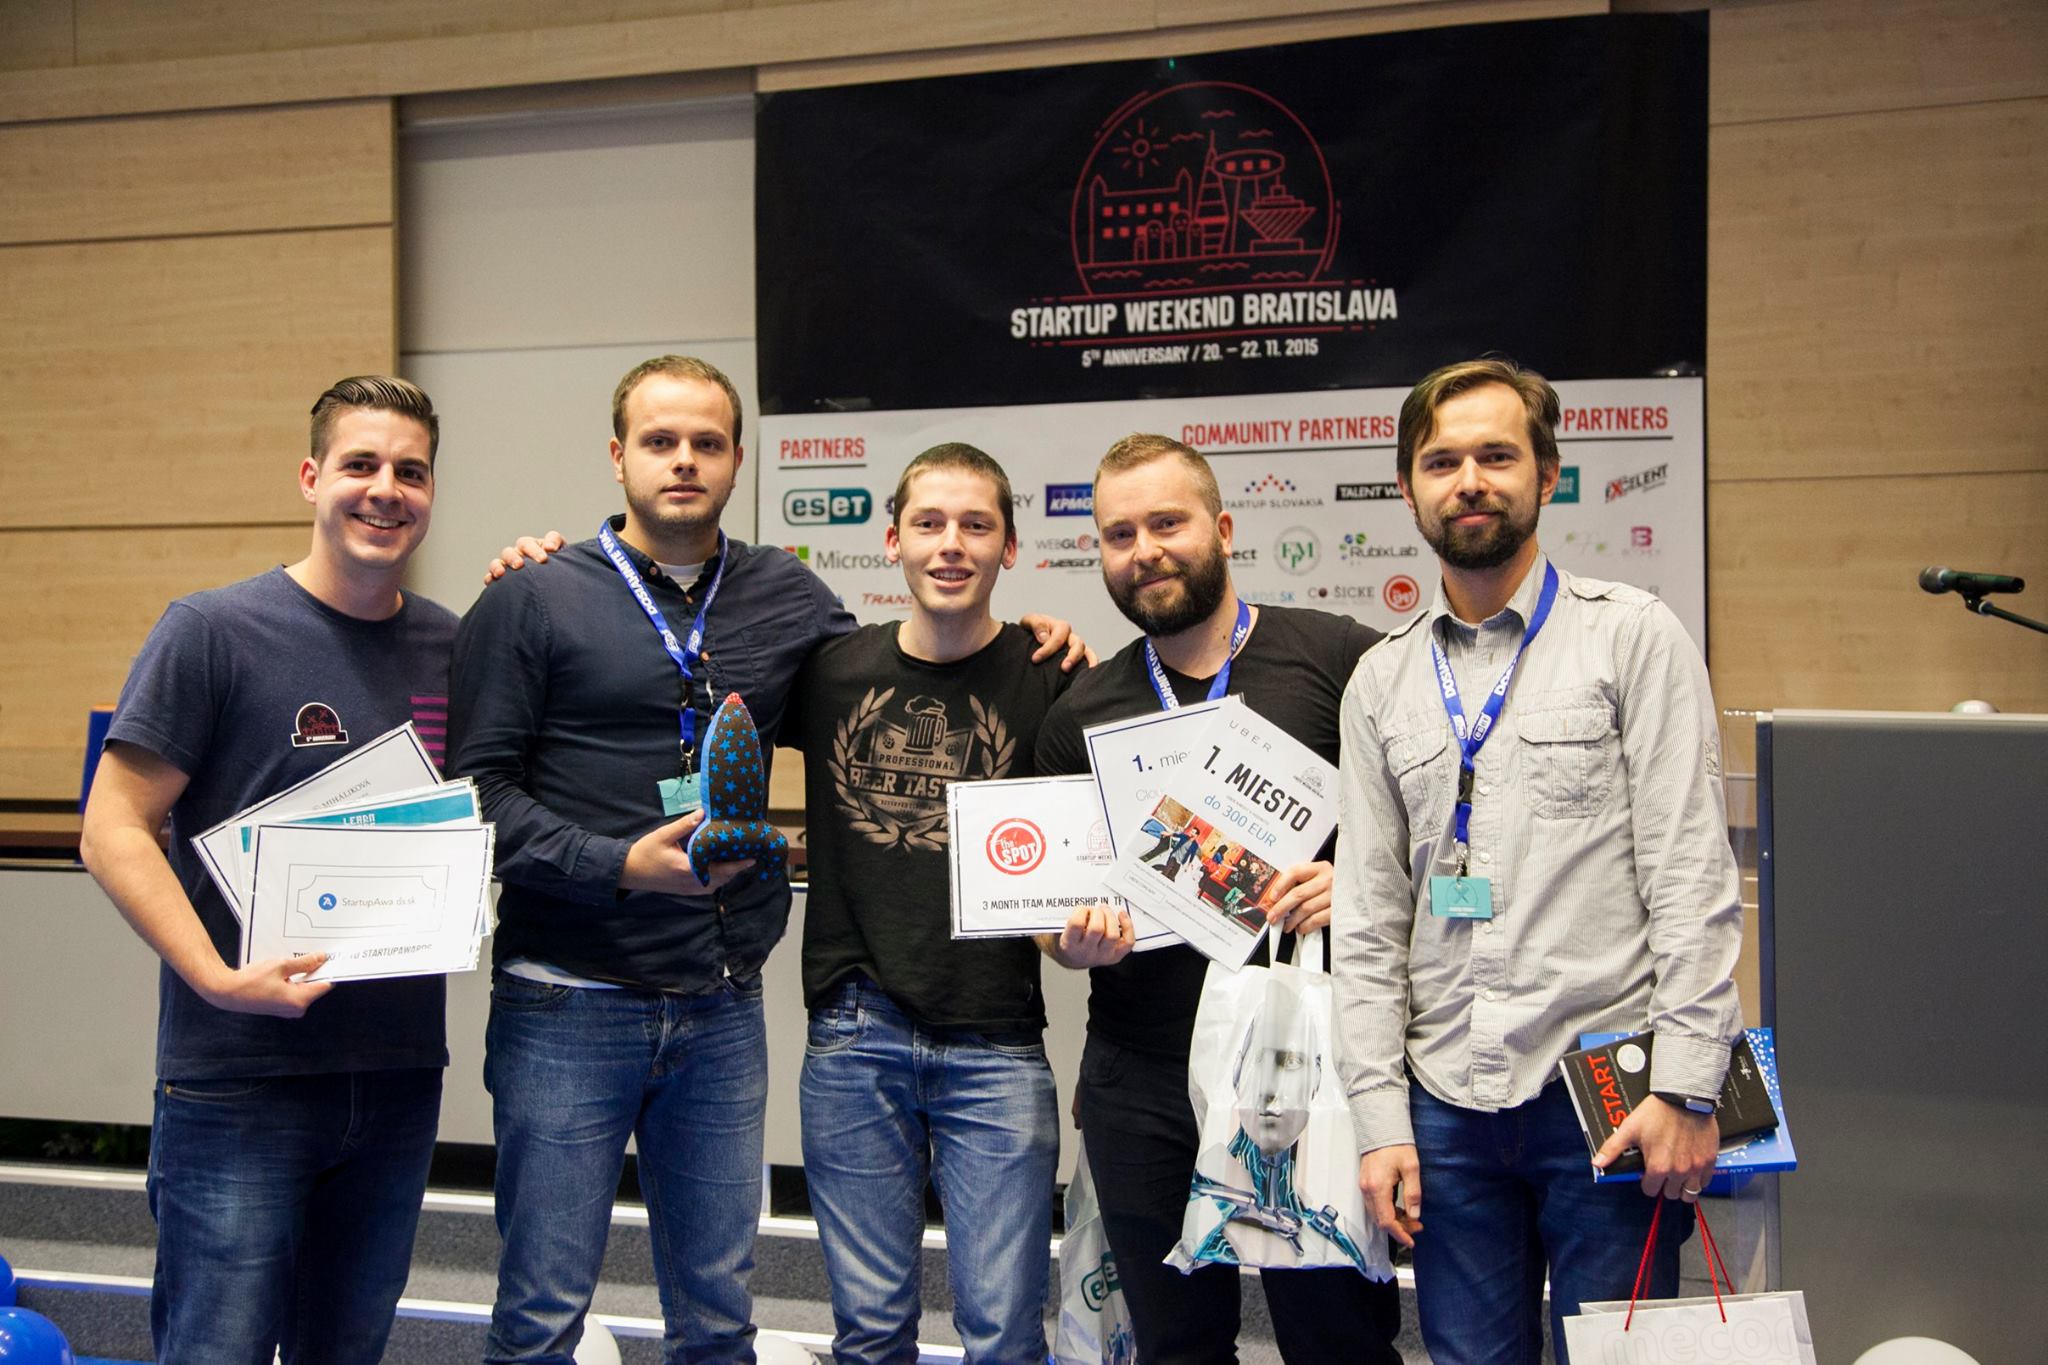 Víťazný tím na Startup Weekende v Bratislave, 2015 (Martin v strede)